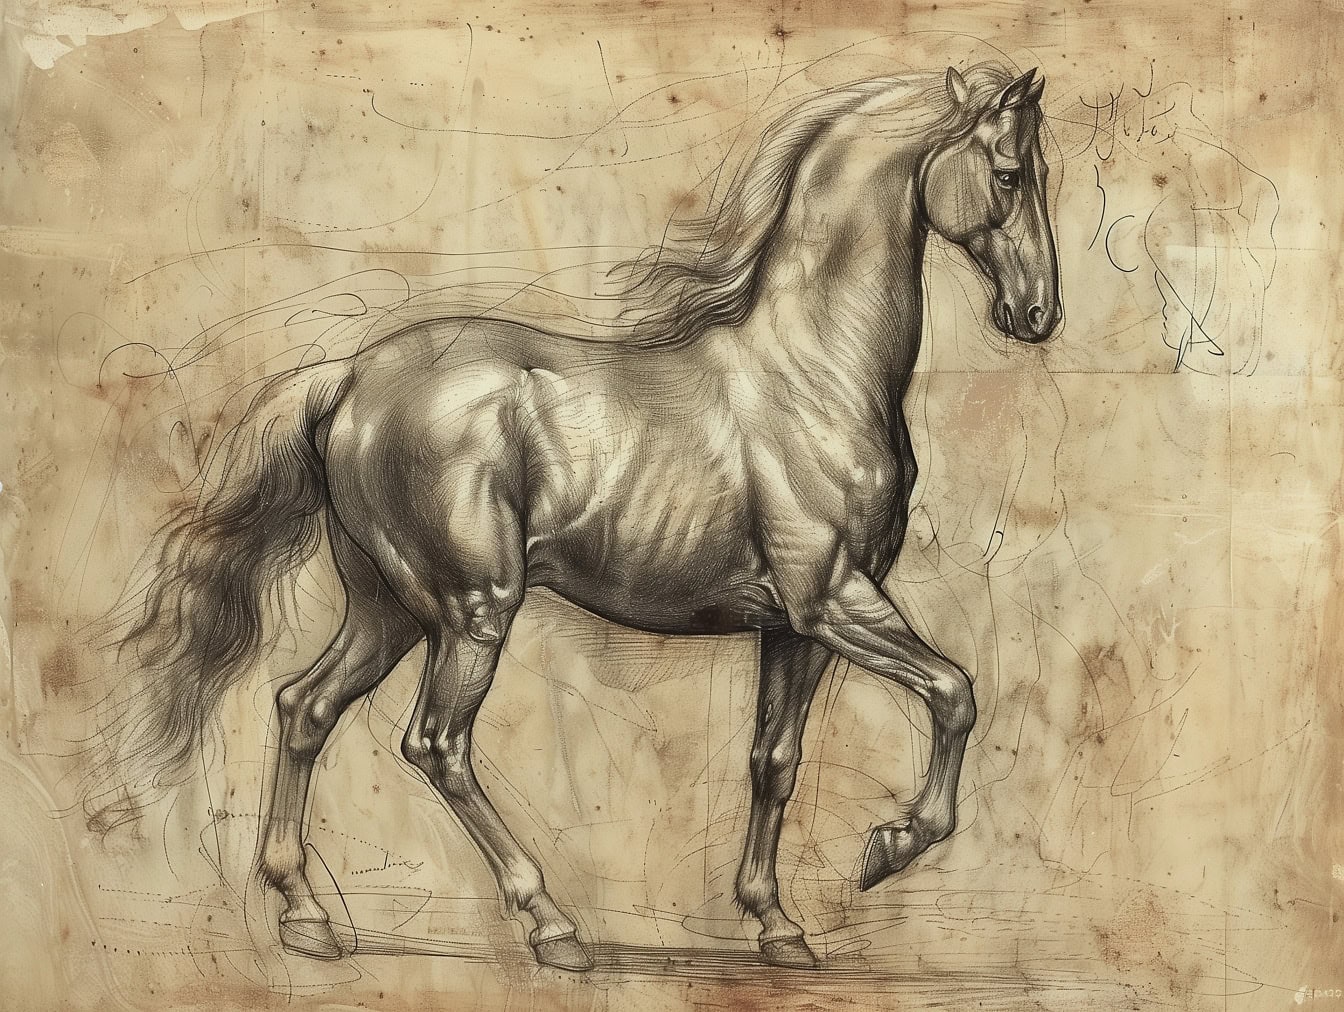 Grafitová skica lipicánského koně s pěkným stínováním ve stylu středověké umělecké kresby